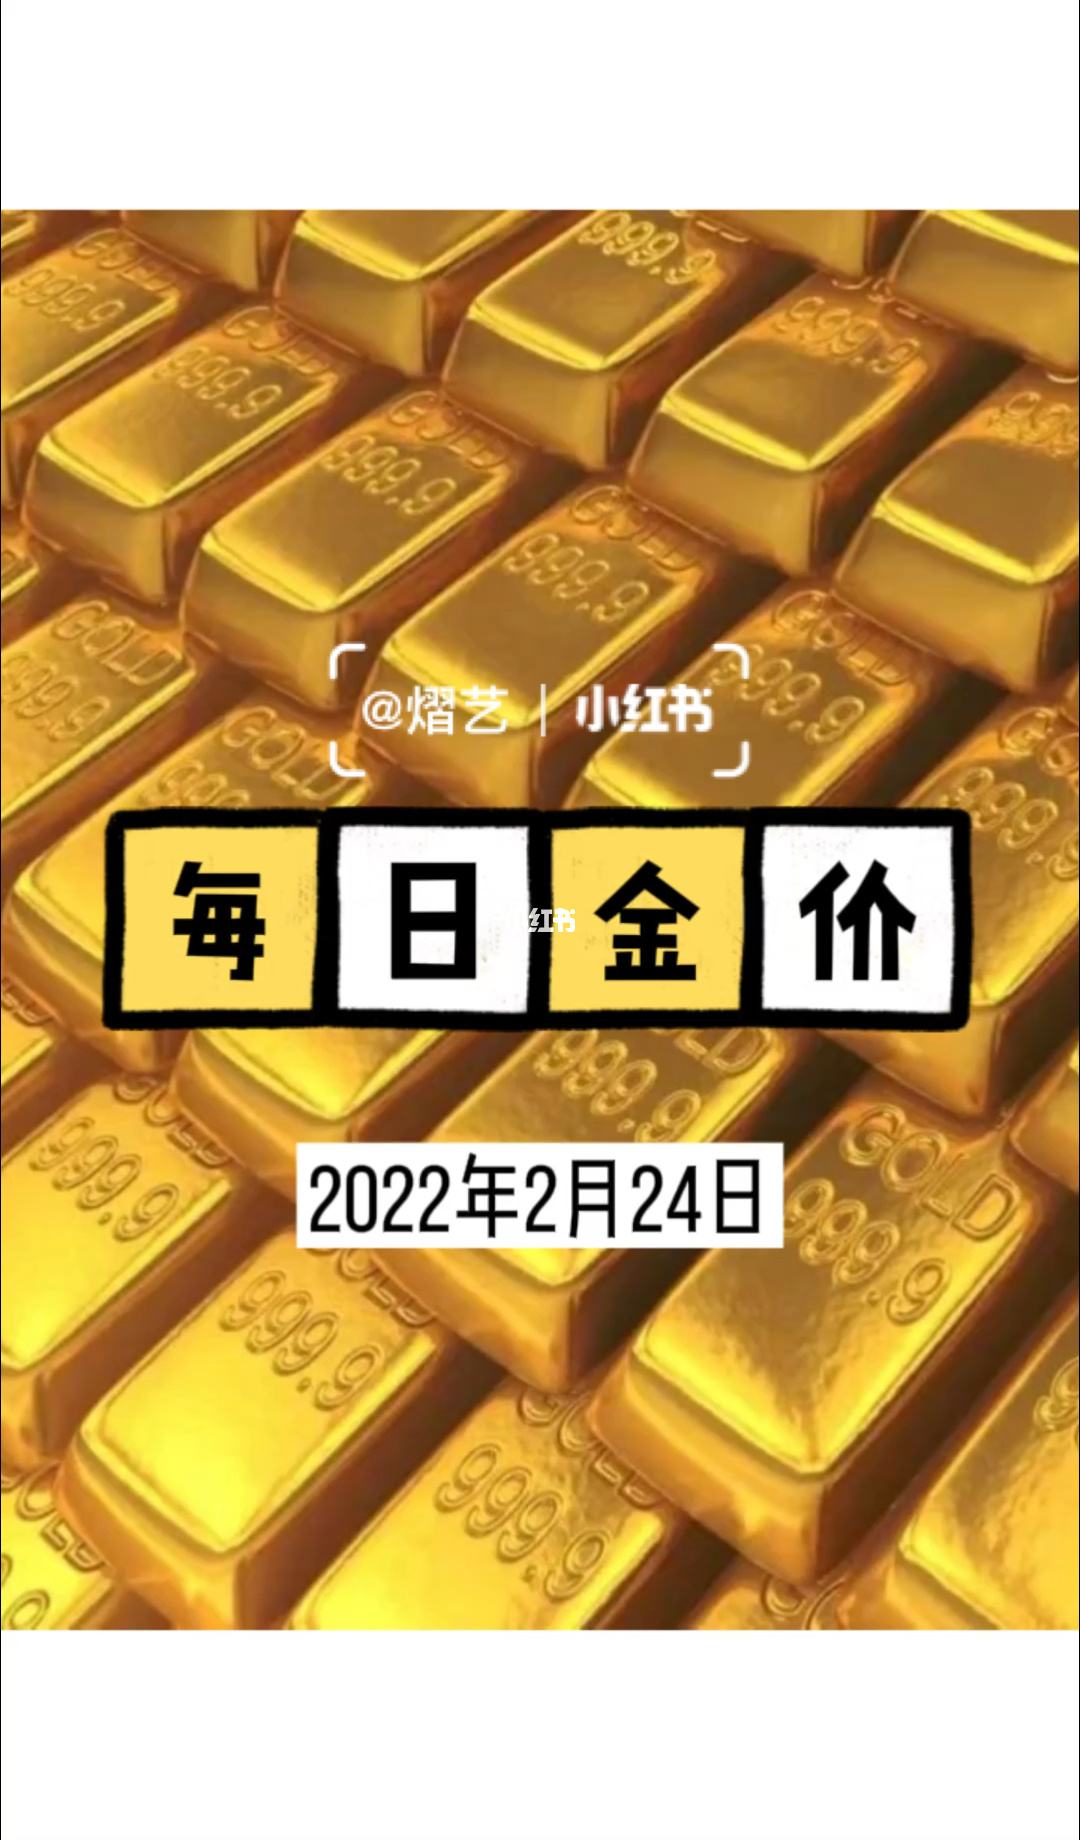 2022年黄金会涨价吗2021年黄金会涨价吗?-第2张图片-翡翠网